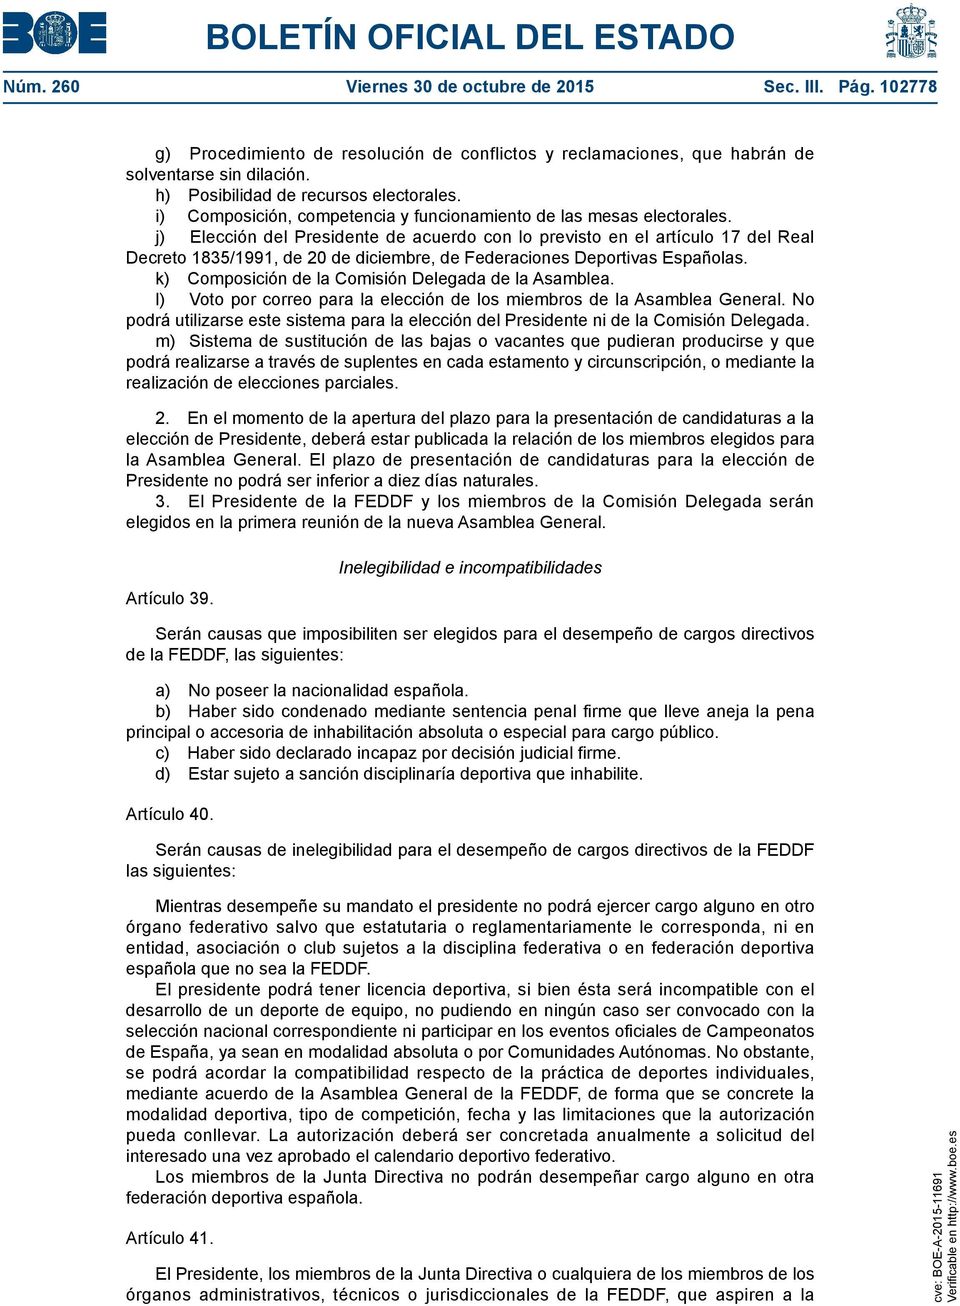 j) Elección del Presidente de acuerdo con lo previsto en el artículo 17 del Real Decreto 1835/1991, de 20 de diciembre, de Federaciones Deportivas Españolas.